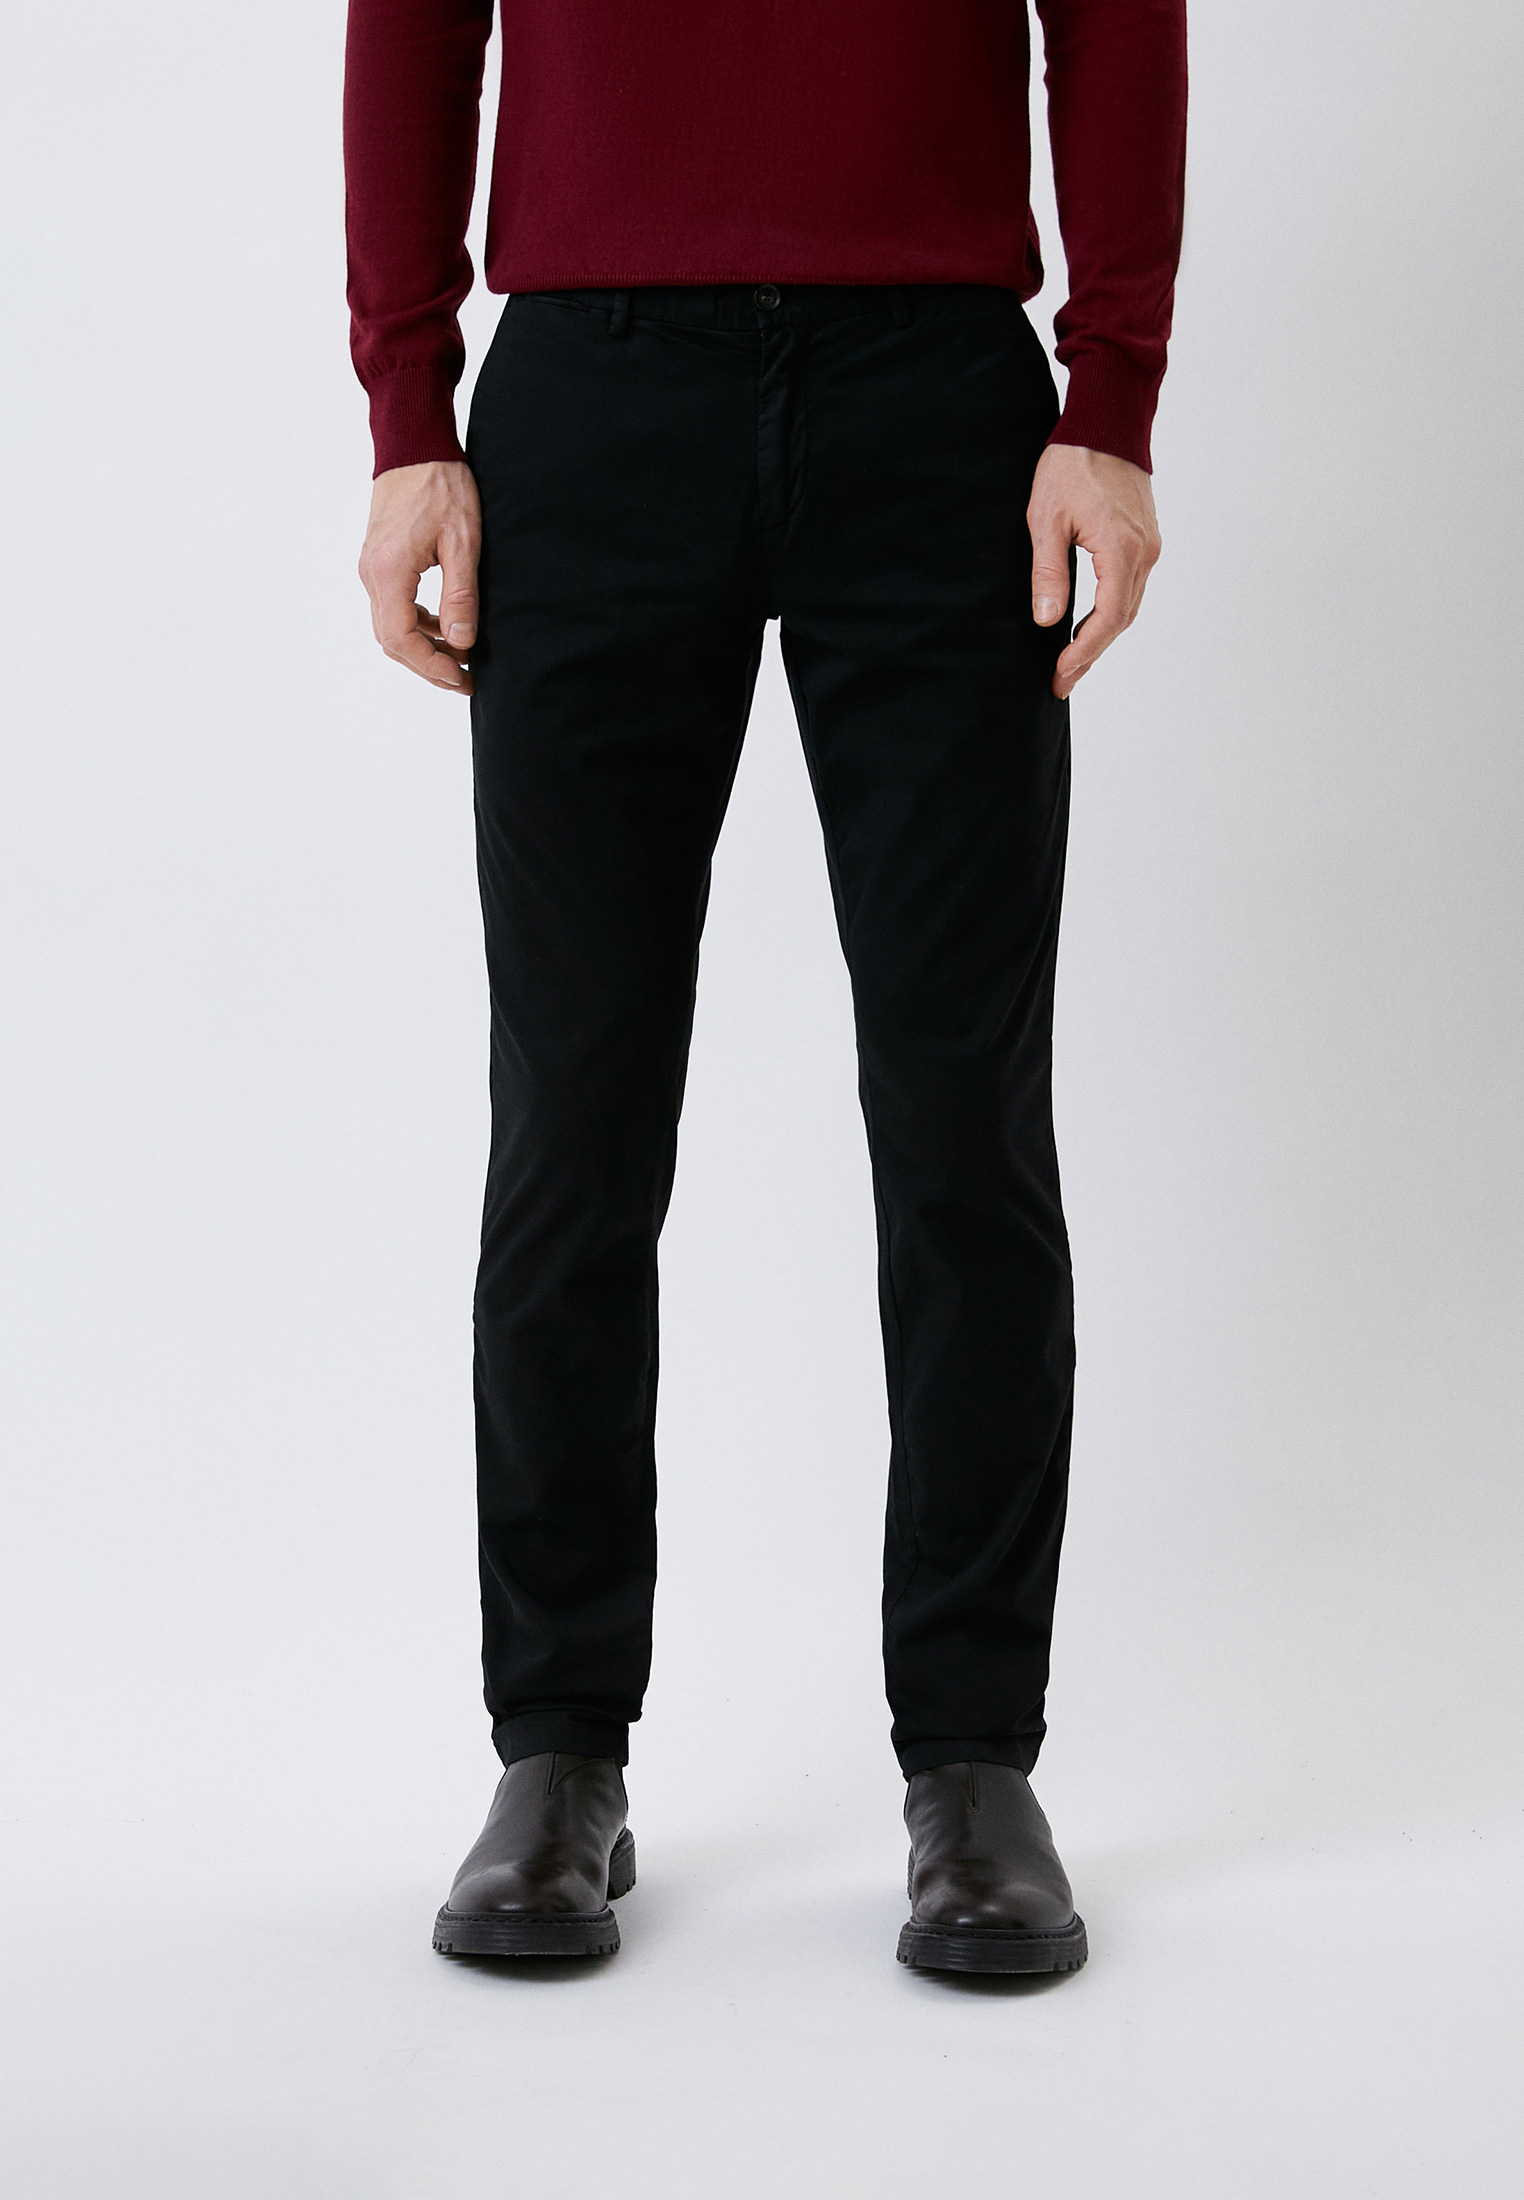 Мужские повседневные брюки Trussardi (Труссарди) 52P00000-1T002361-H-001: изображение 1